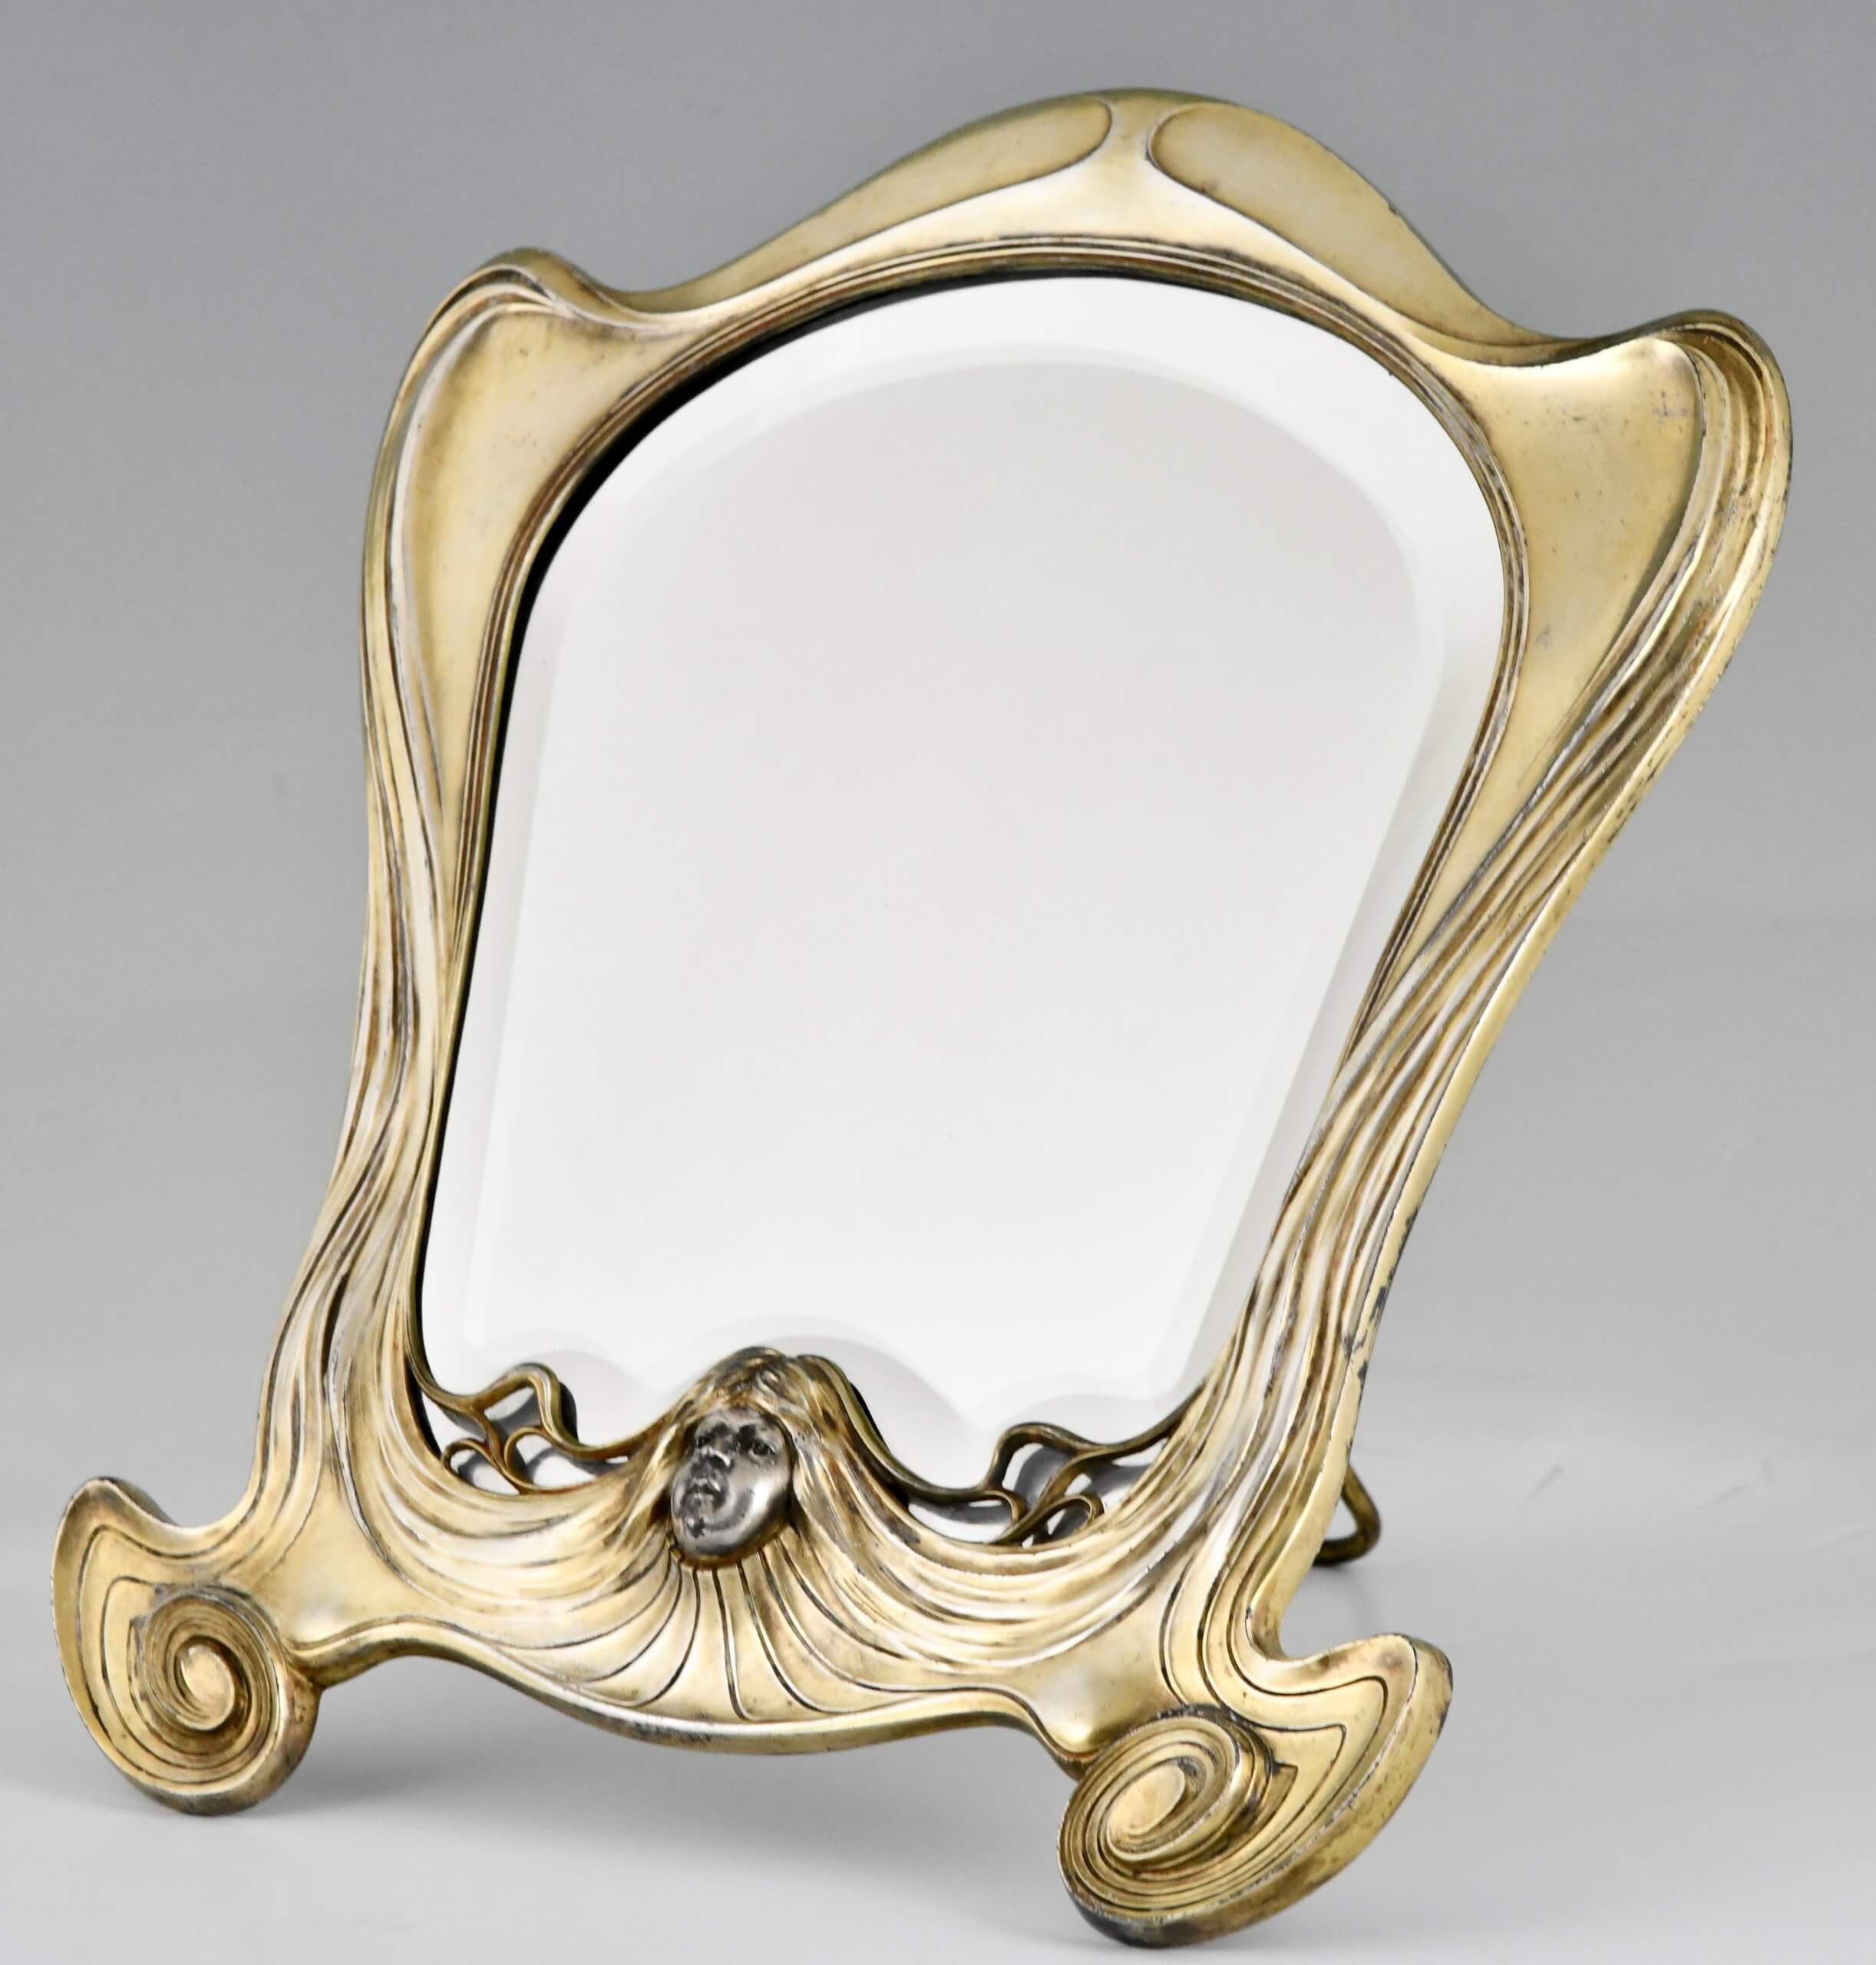 Art Nouveau spiegel met gezicht van een vrouw